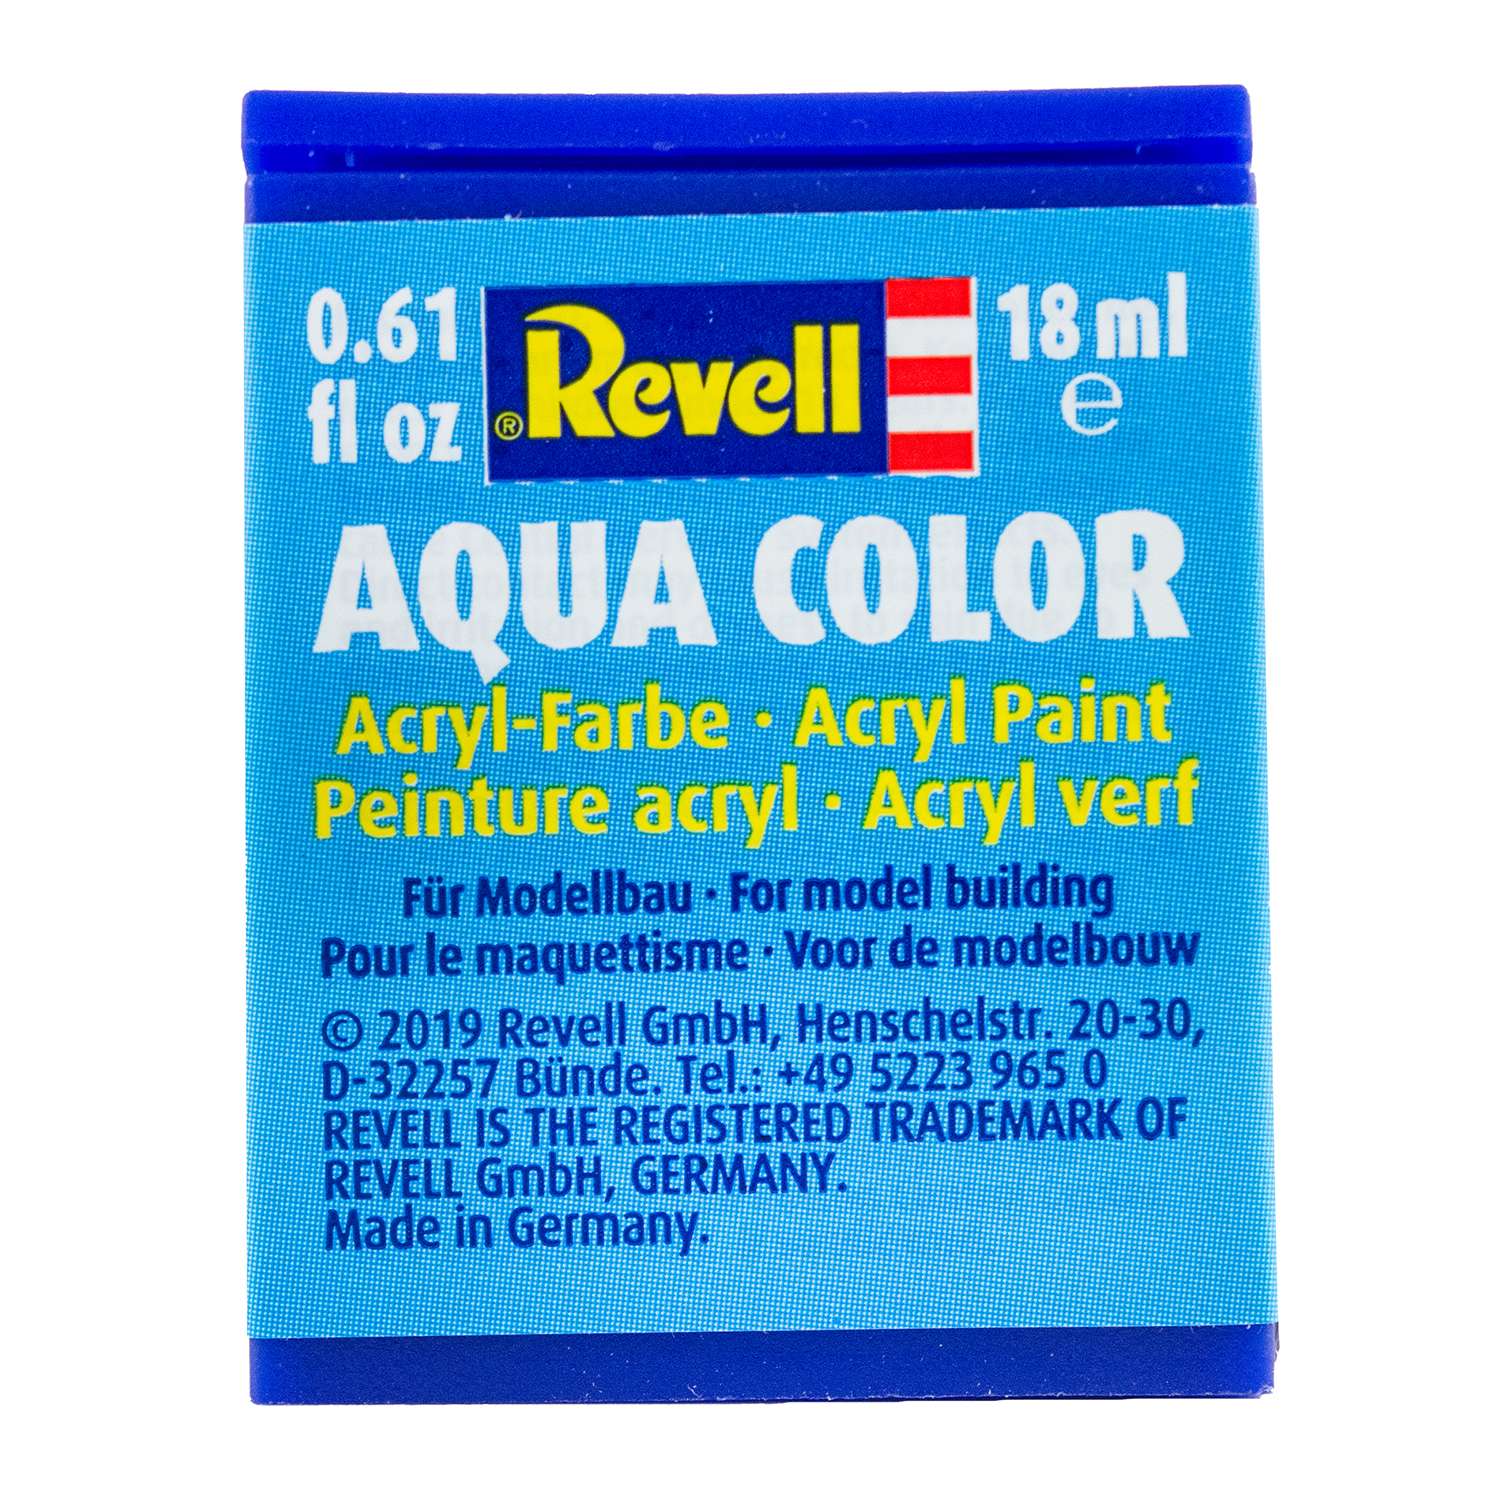 Аква-краска Revell пурпурно-красная шёлк 36331 - фото 2